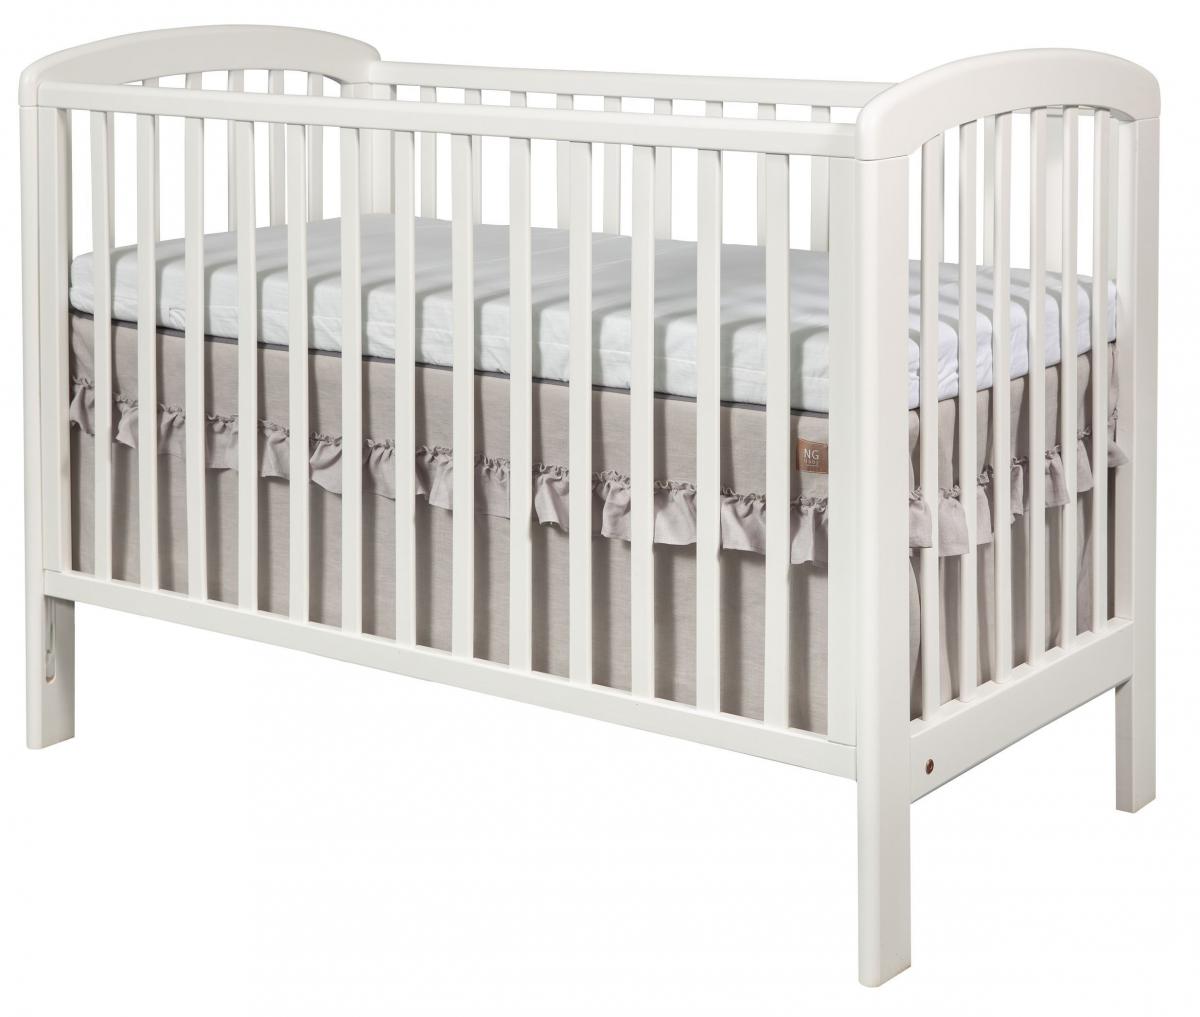 NG Baby Bed Valance Ruffled Cot - Light Grey 120x60x40 cm